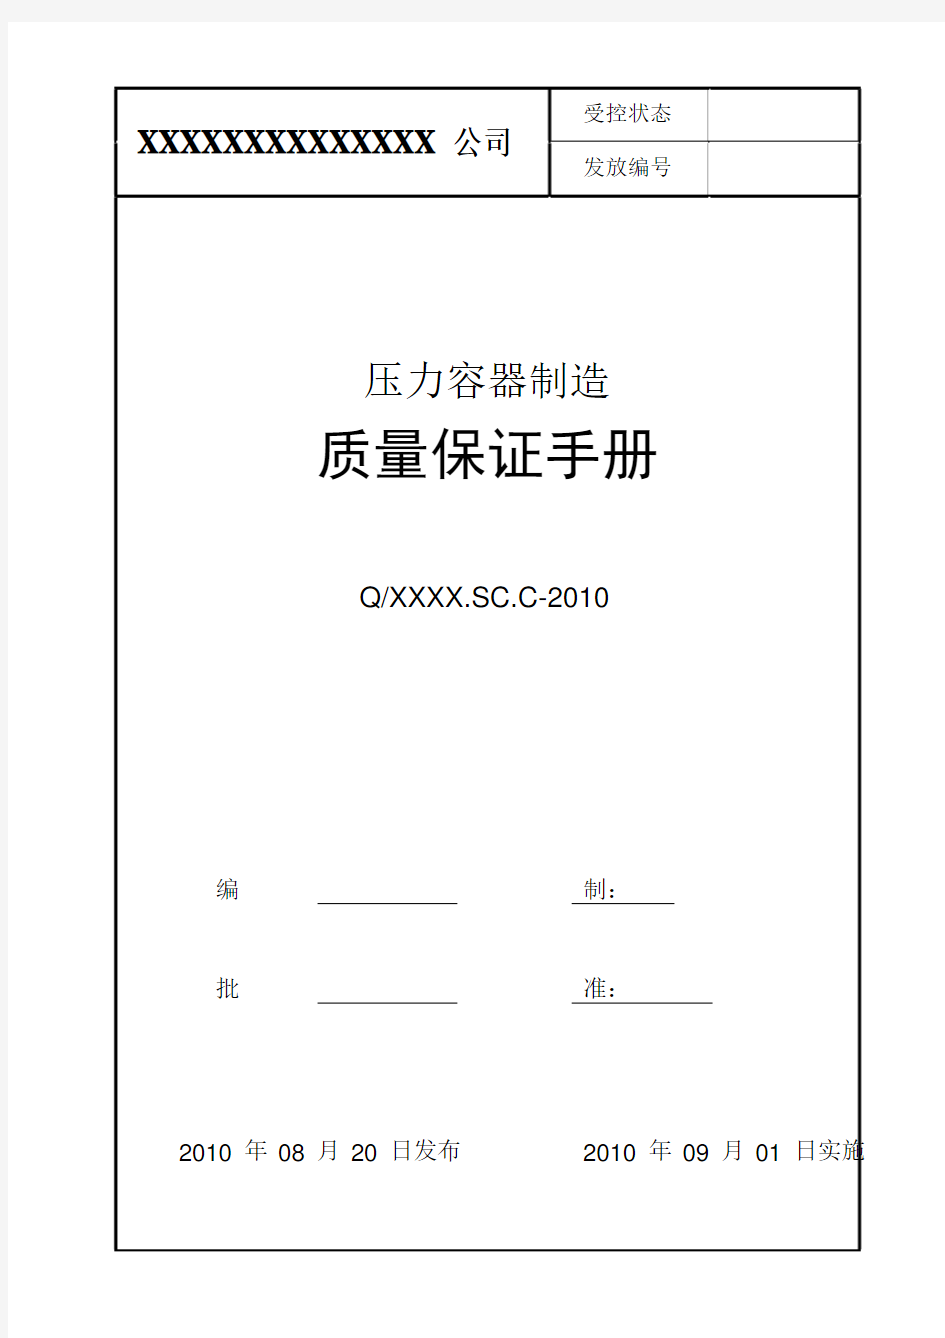 压力容器制造质量保证手册-2010版(1)2